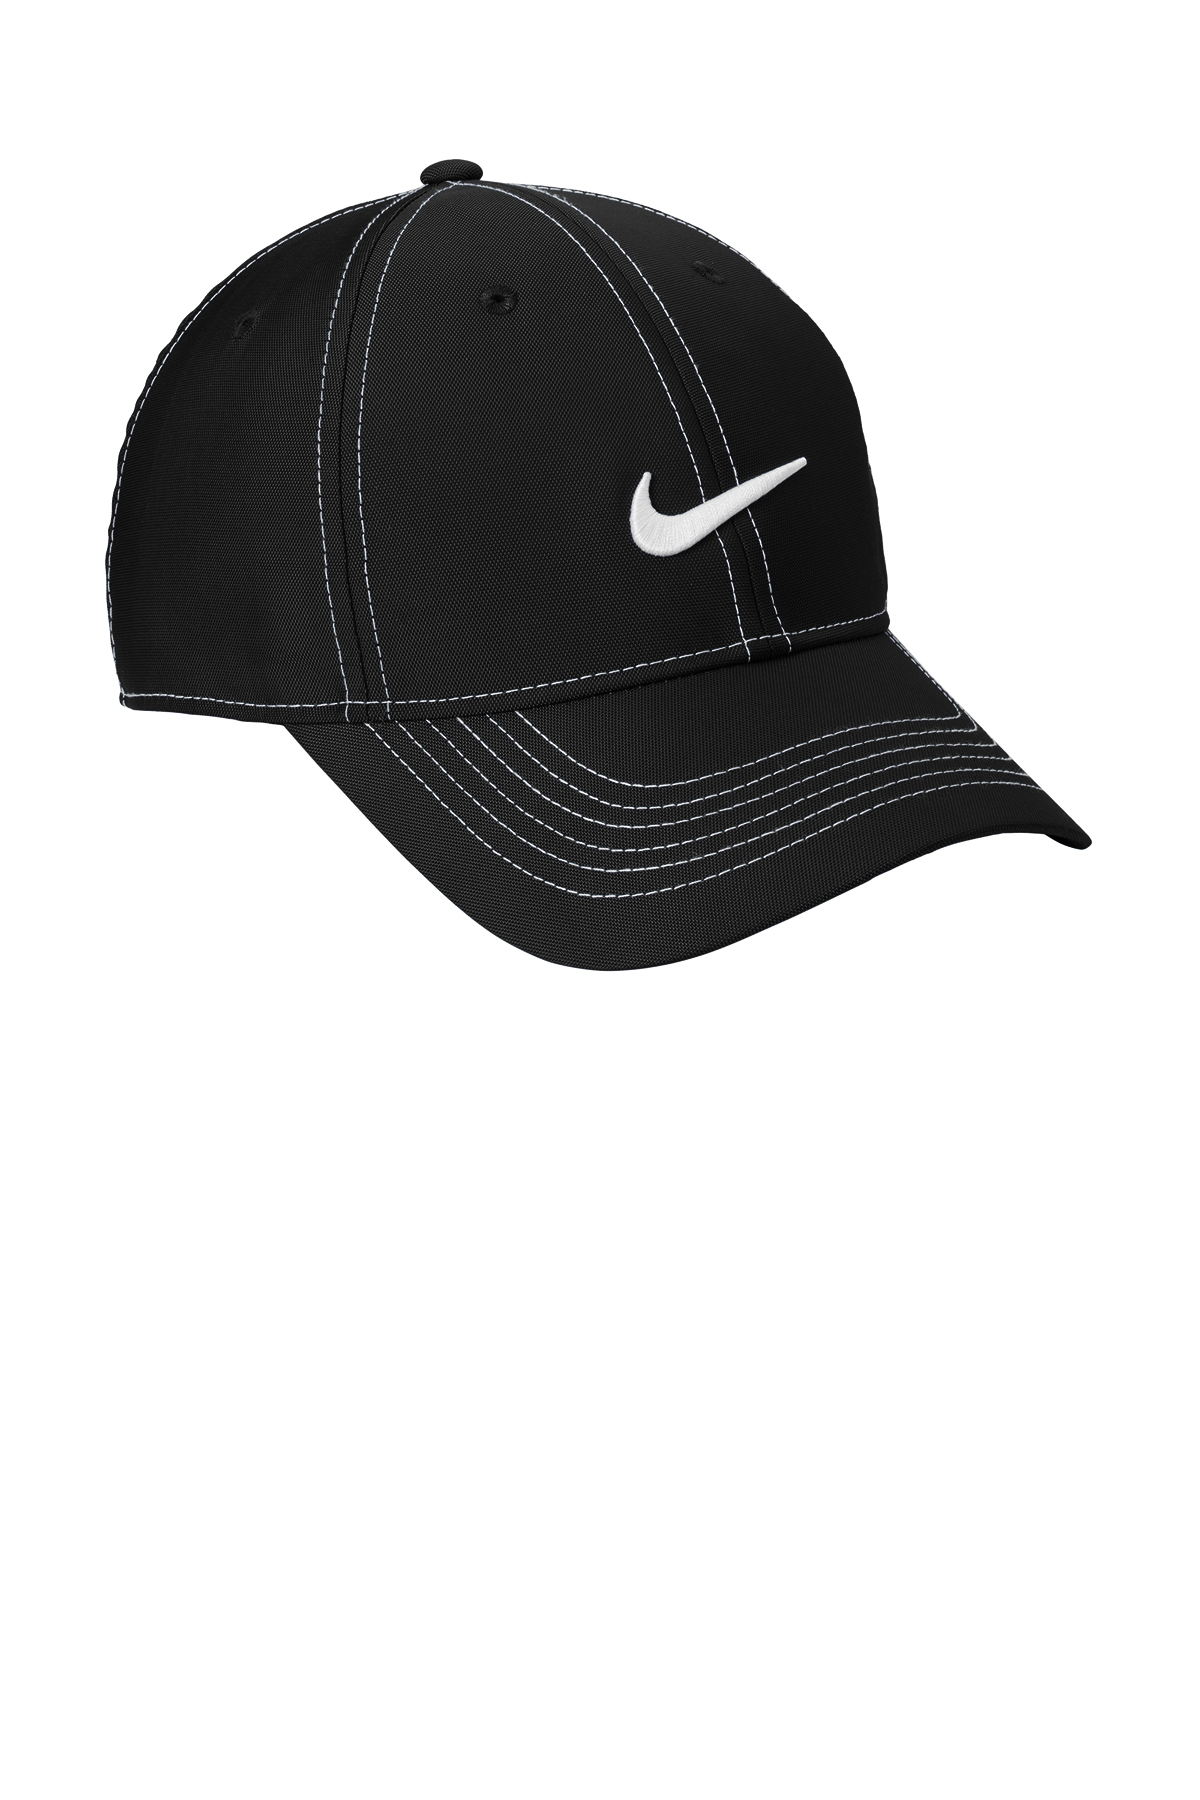 Nike Swoosh Front Cap | Product | SanMar